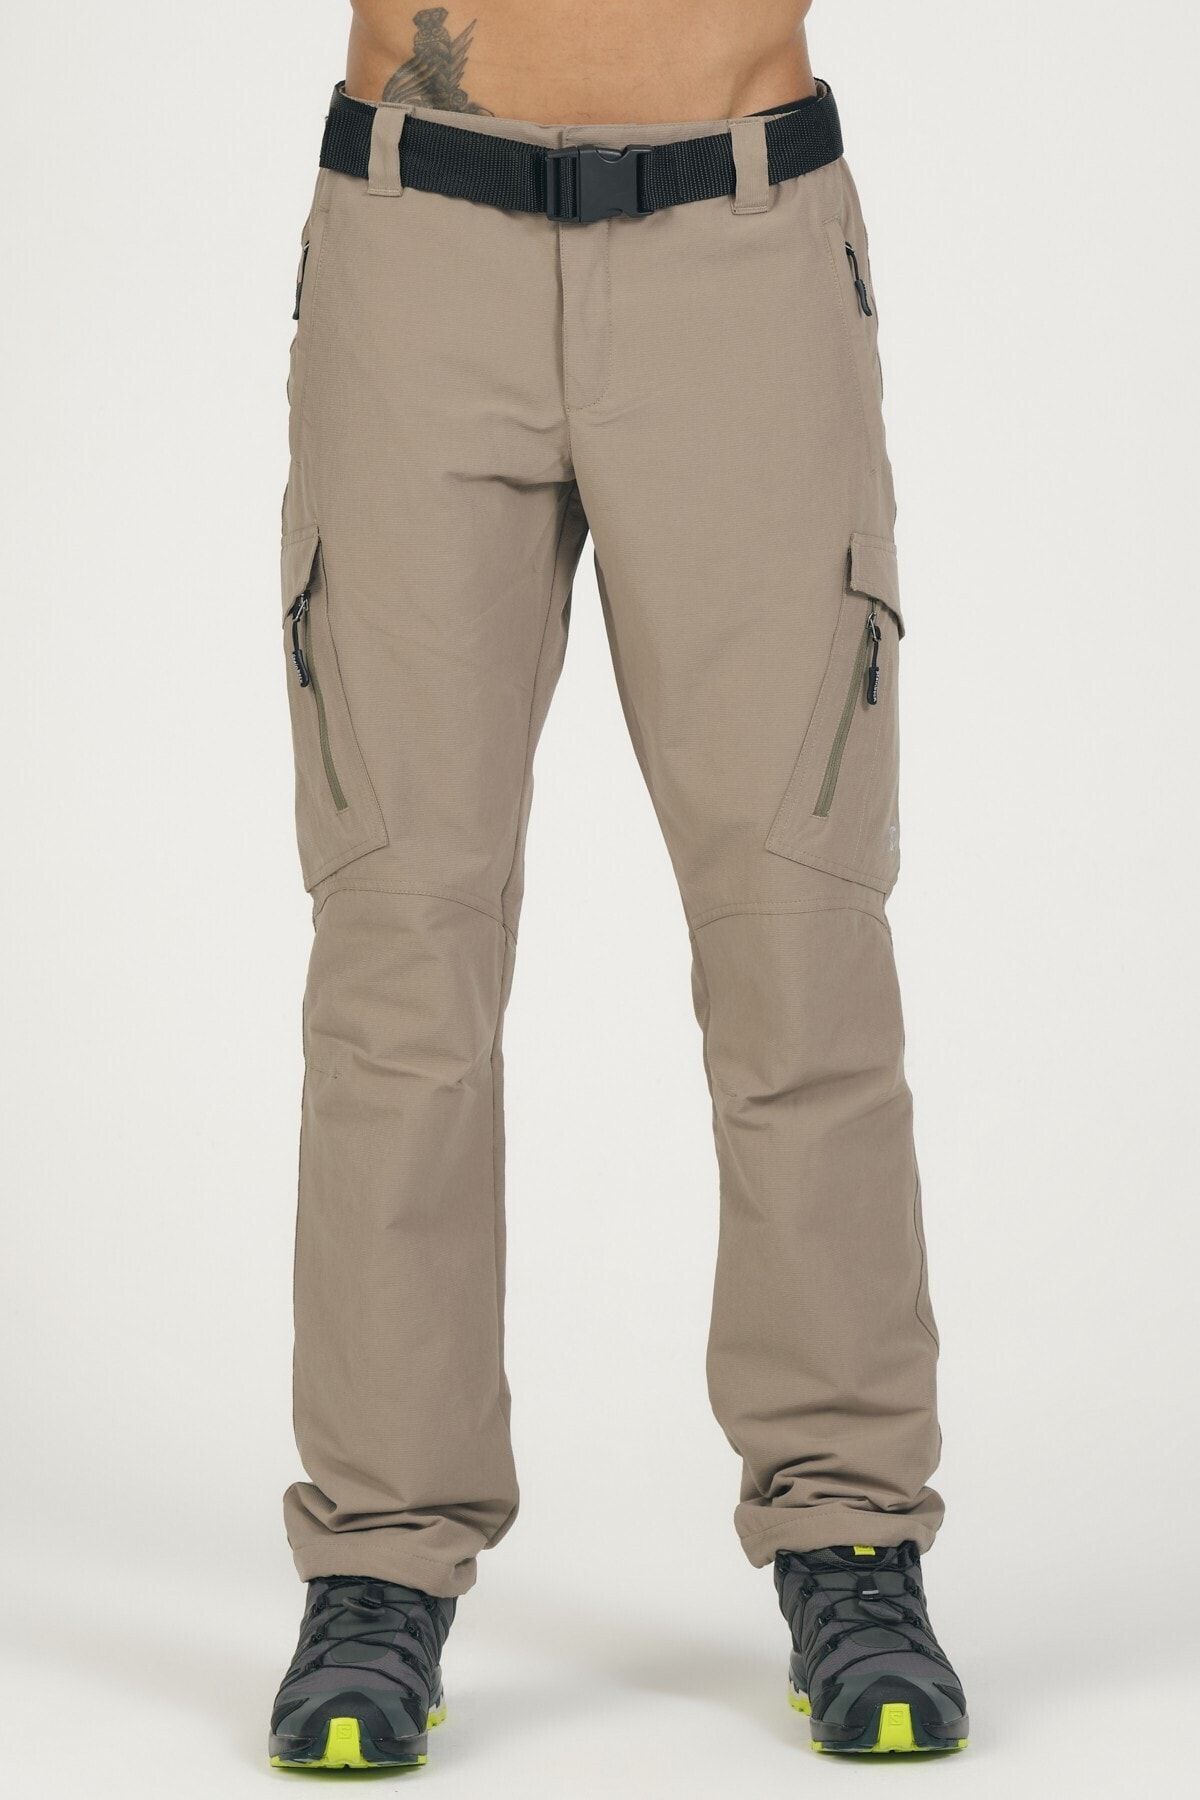 Q Steinbock Steinbock Argos Man Pants Outdoor Pantolon 50550